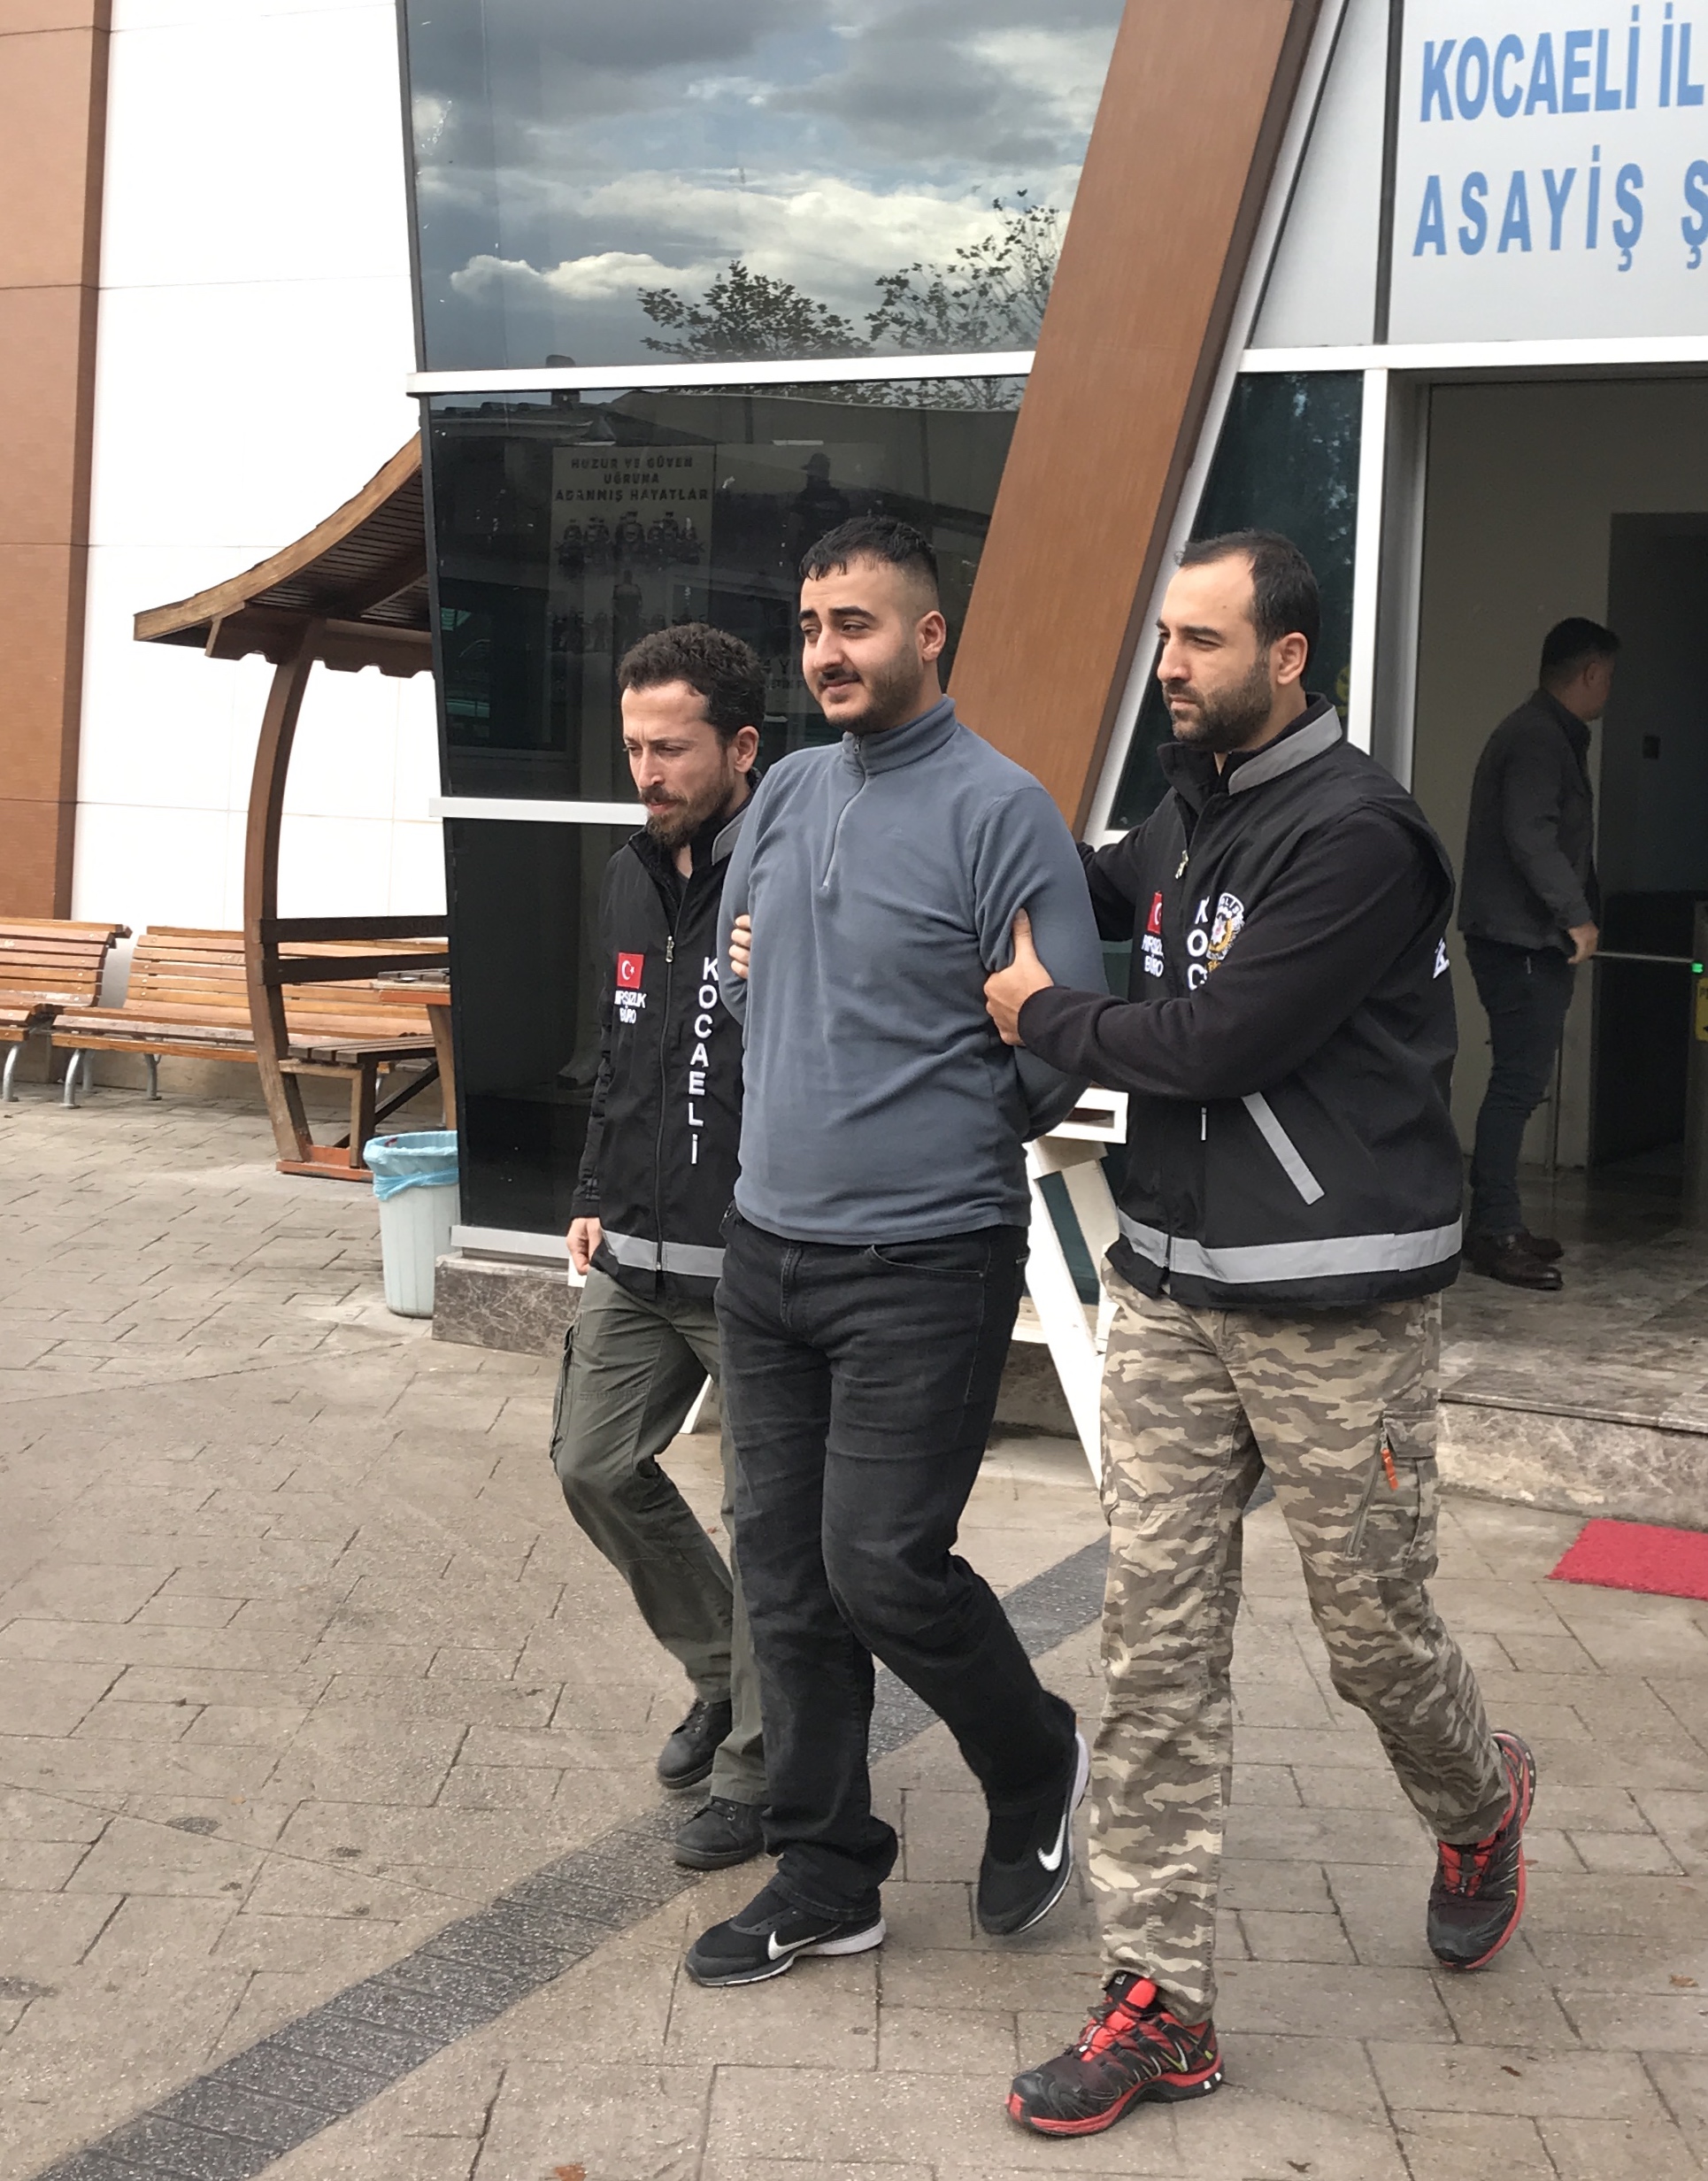 İstanbul’dan gelip Kocaeli’de hırsızlık yapan 3 şüpheli yakalandı